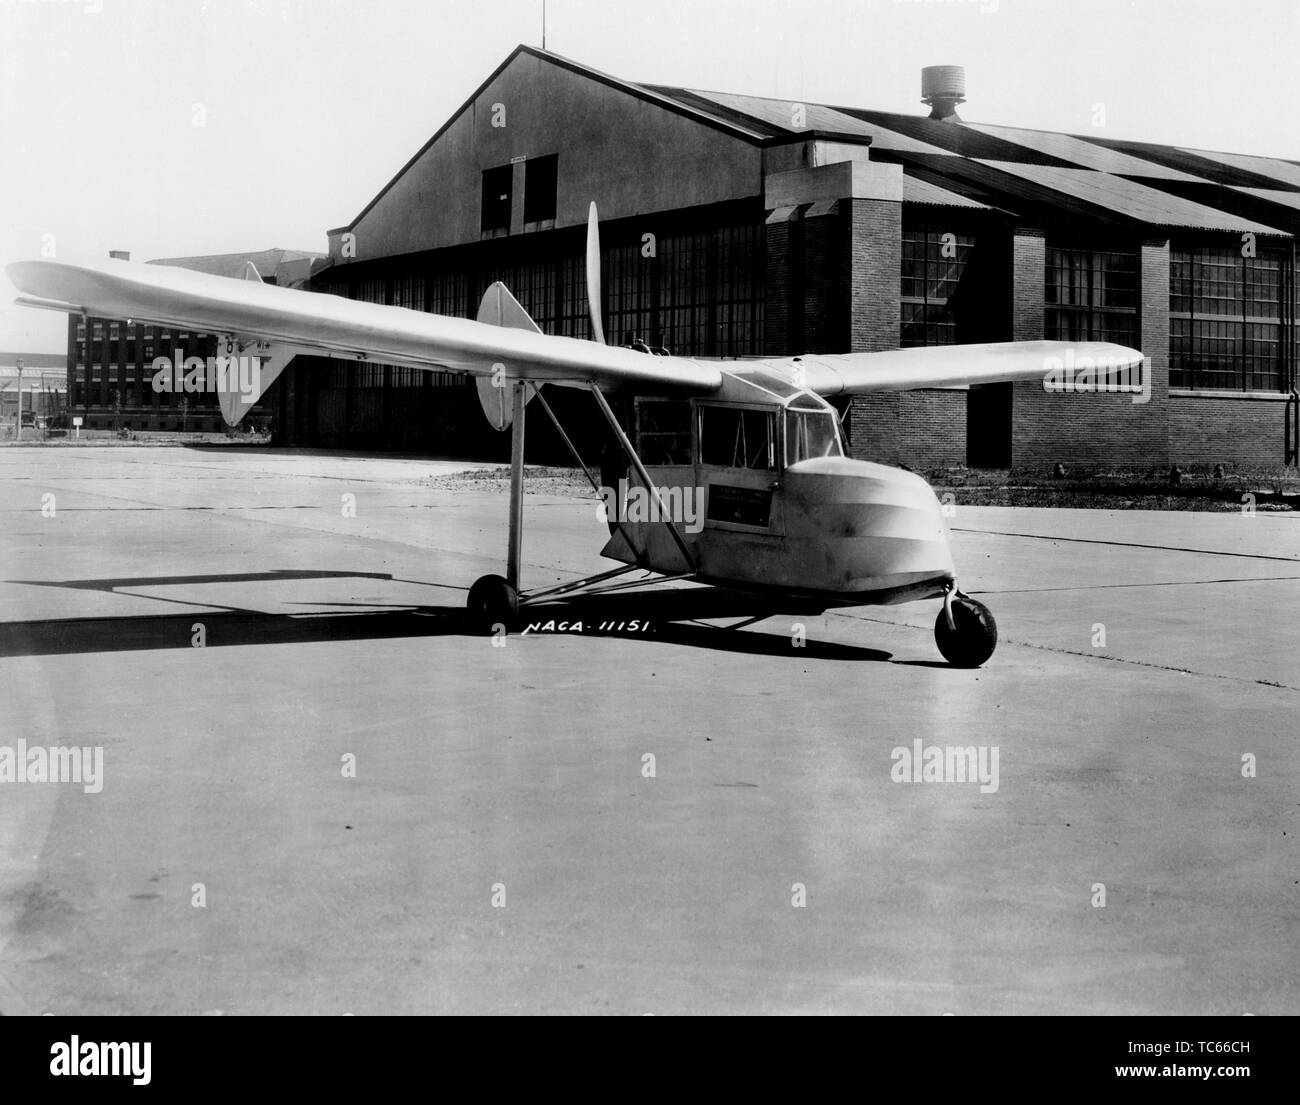 Fred Weick.'s autocostruzioni W-1un aeromobile, uno dei primi aerei a impiegare il triciclo di atterraggio, 1934. Immagine cortesia Nazionale Aeronautica e Spaziale Administration (NASA). () Foto Stock